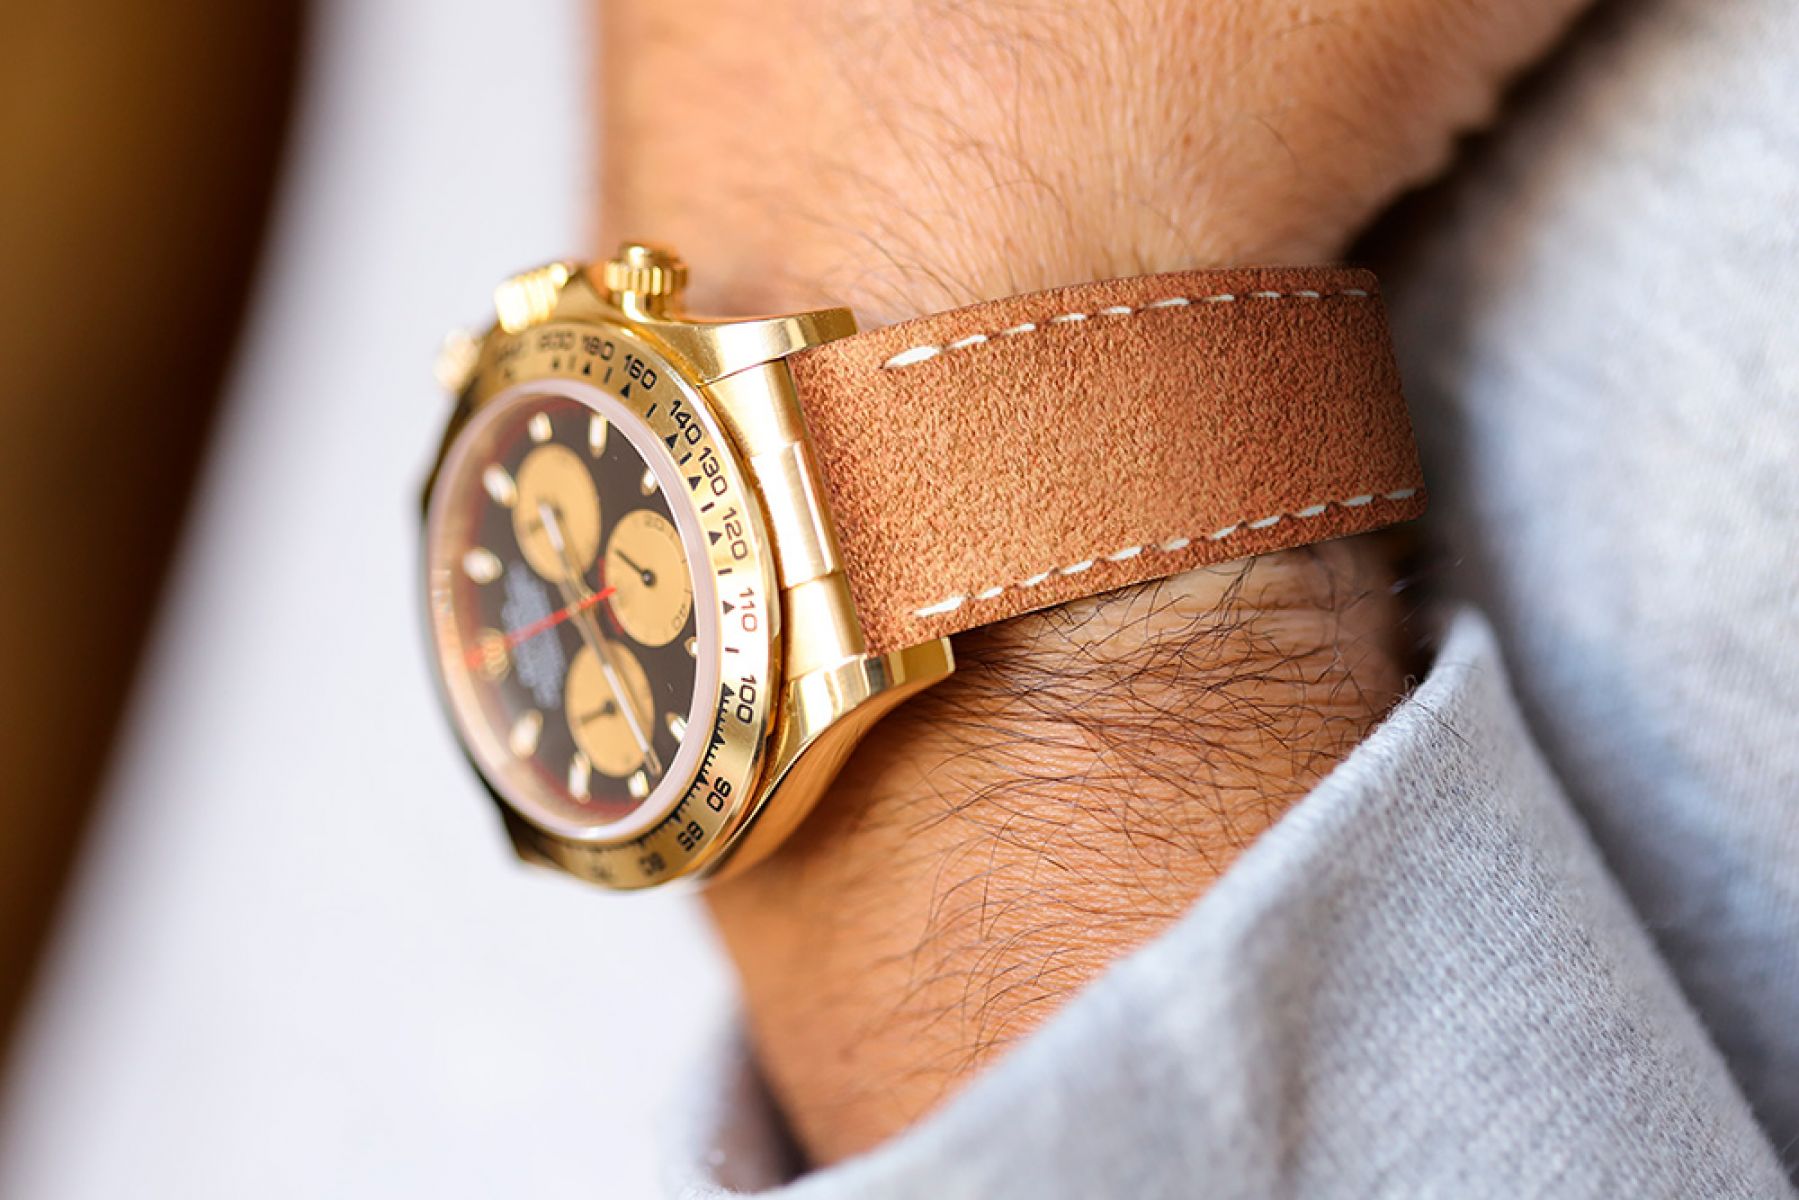 Best Leather Watch Straps - Milanostraps